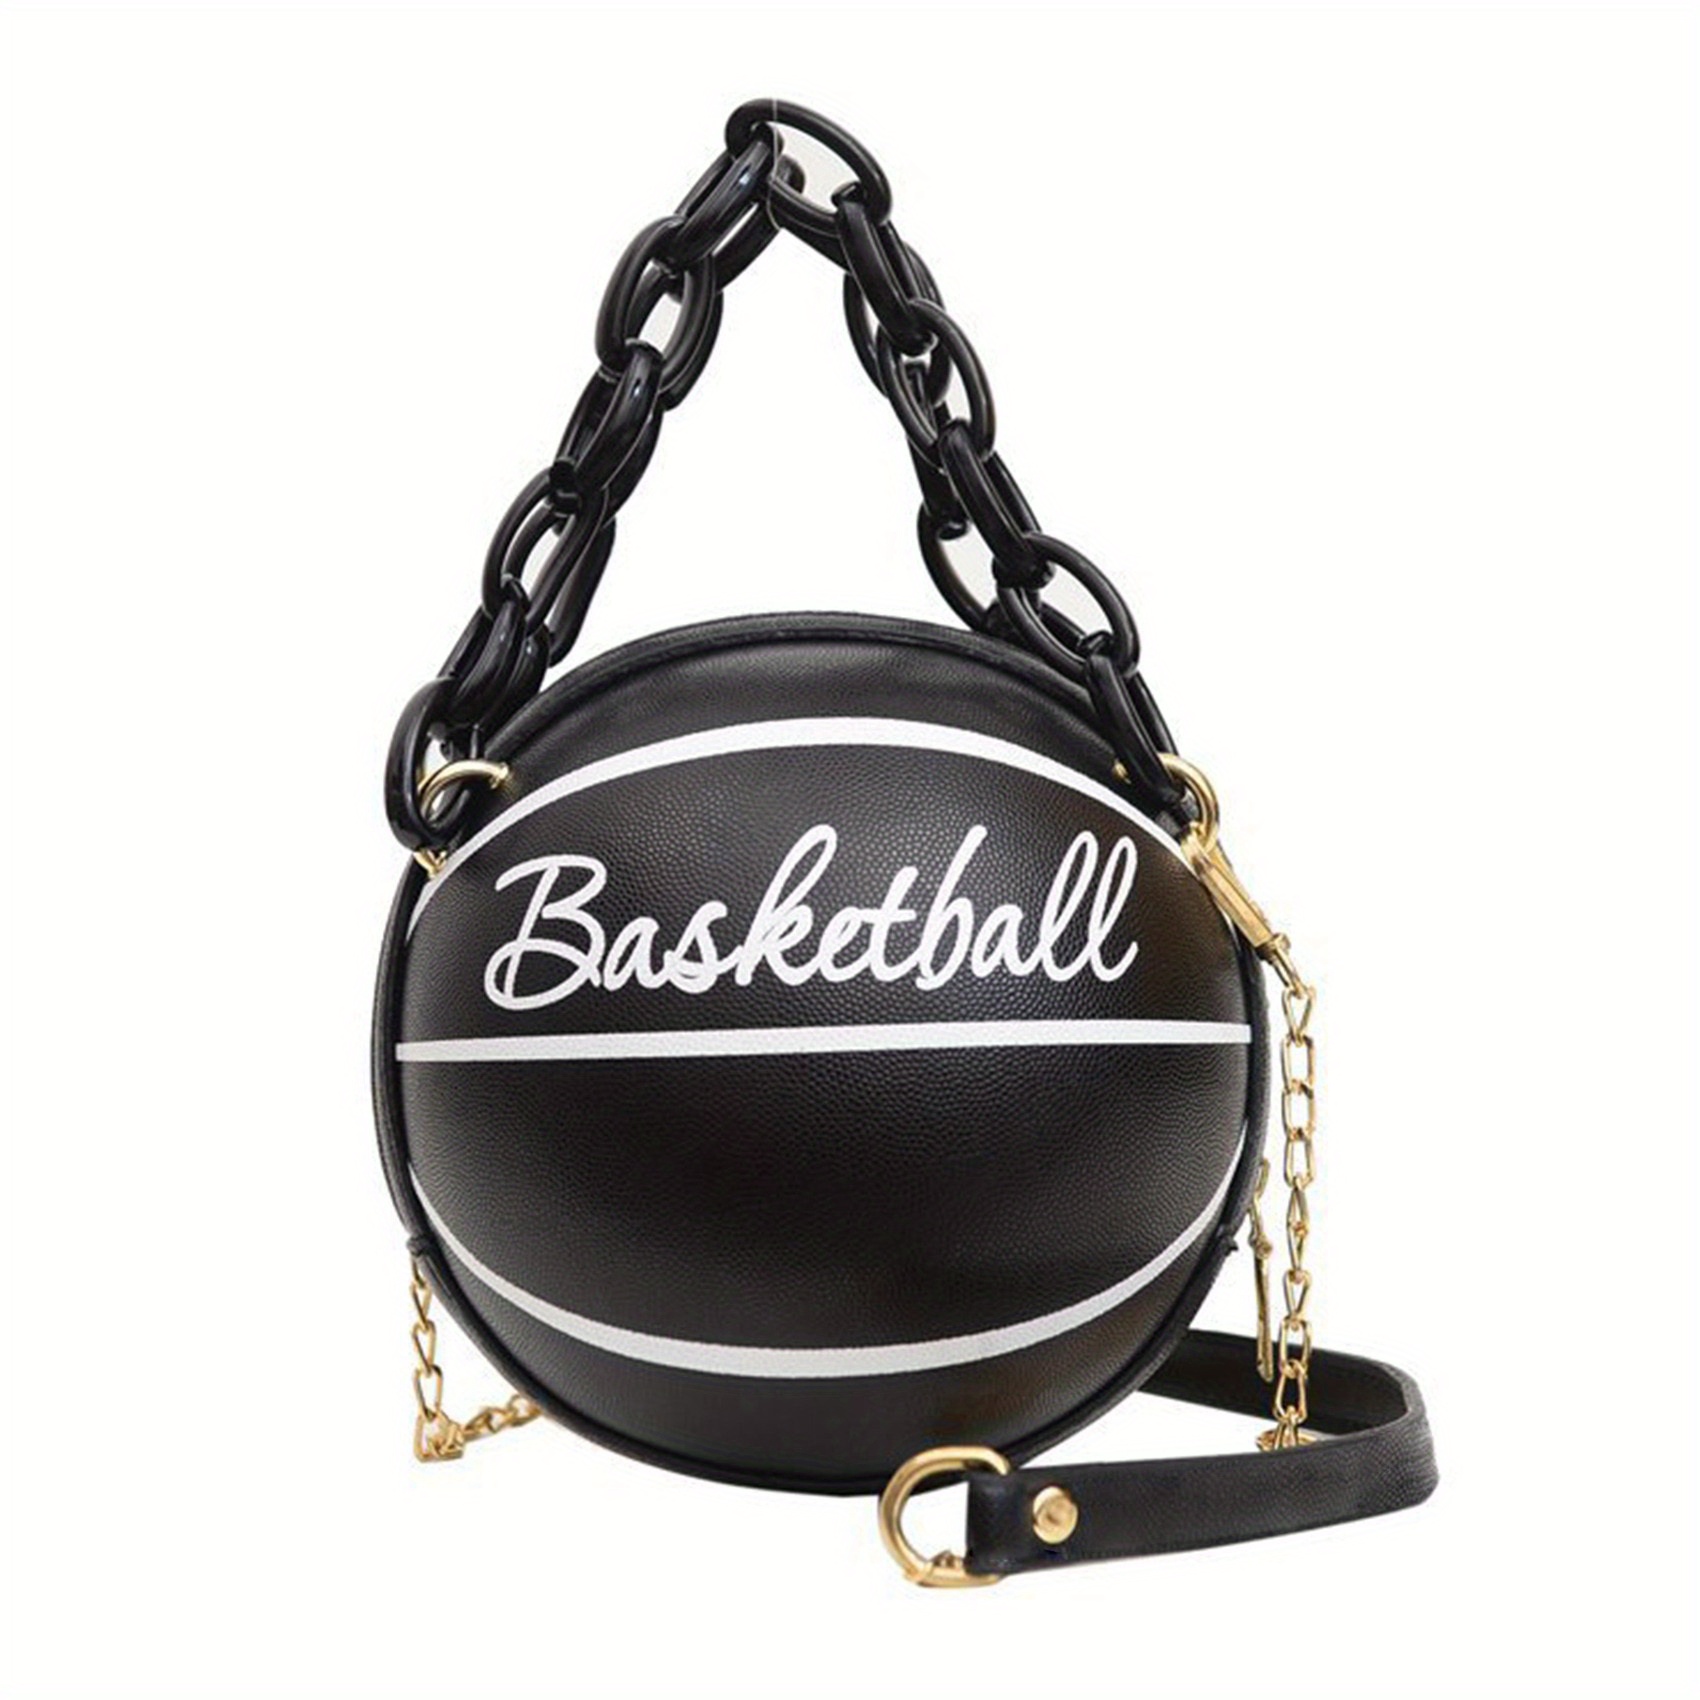 Women's Shoulder Bag, Novelty Bag, Basketball Shaped Chain Bag